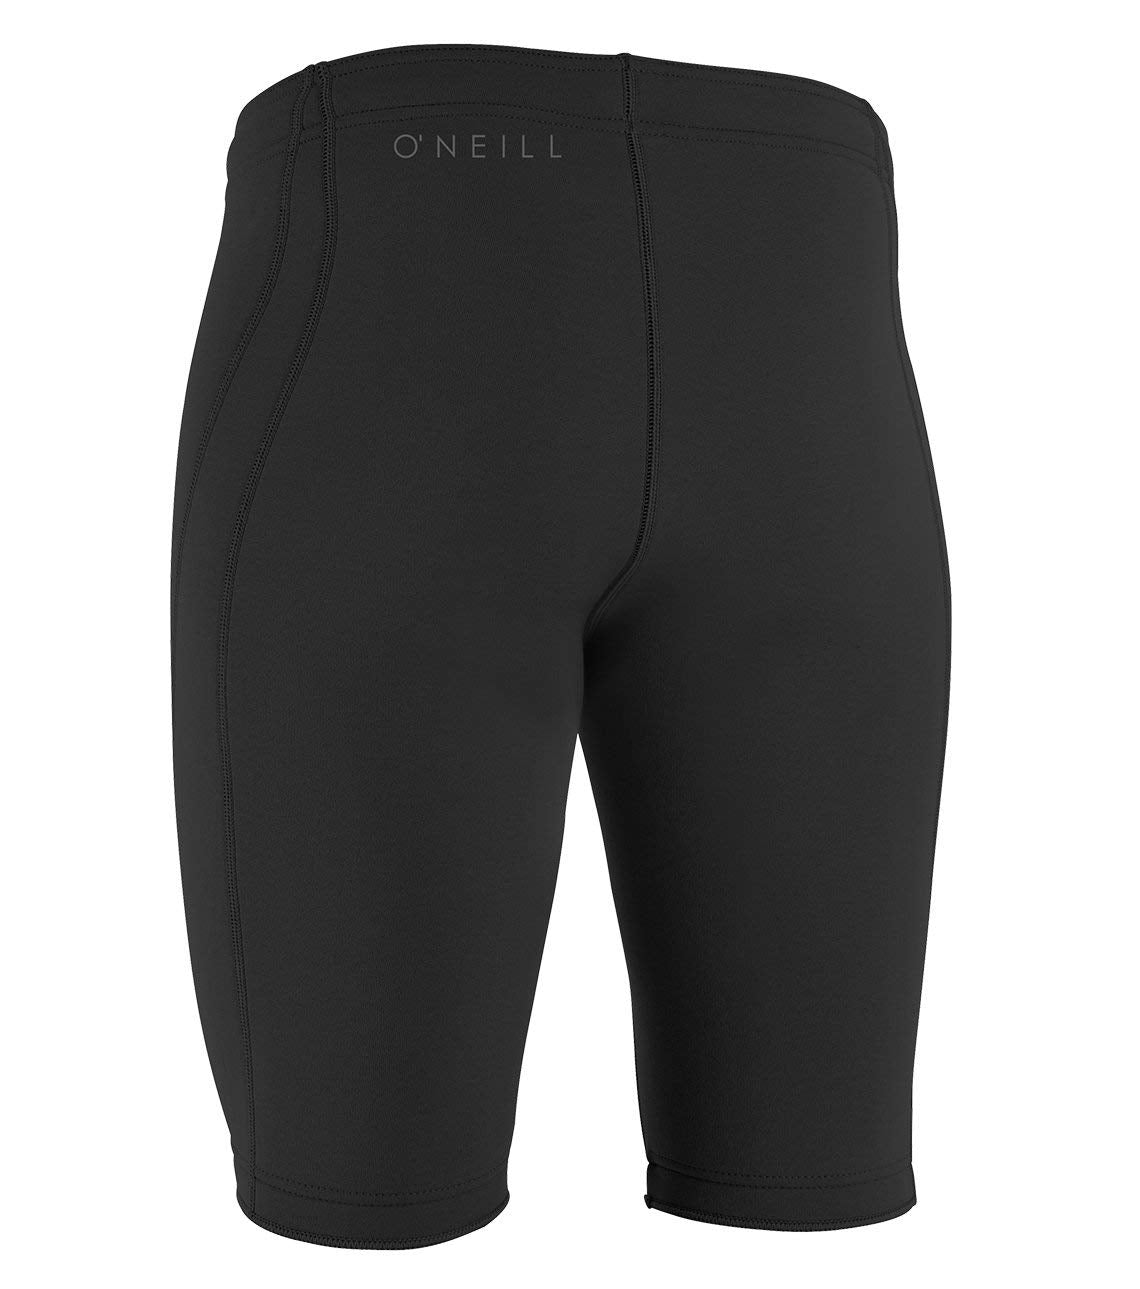 O'neill Premium Skin Shorts